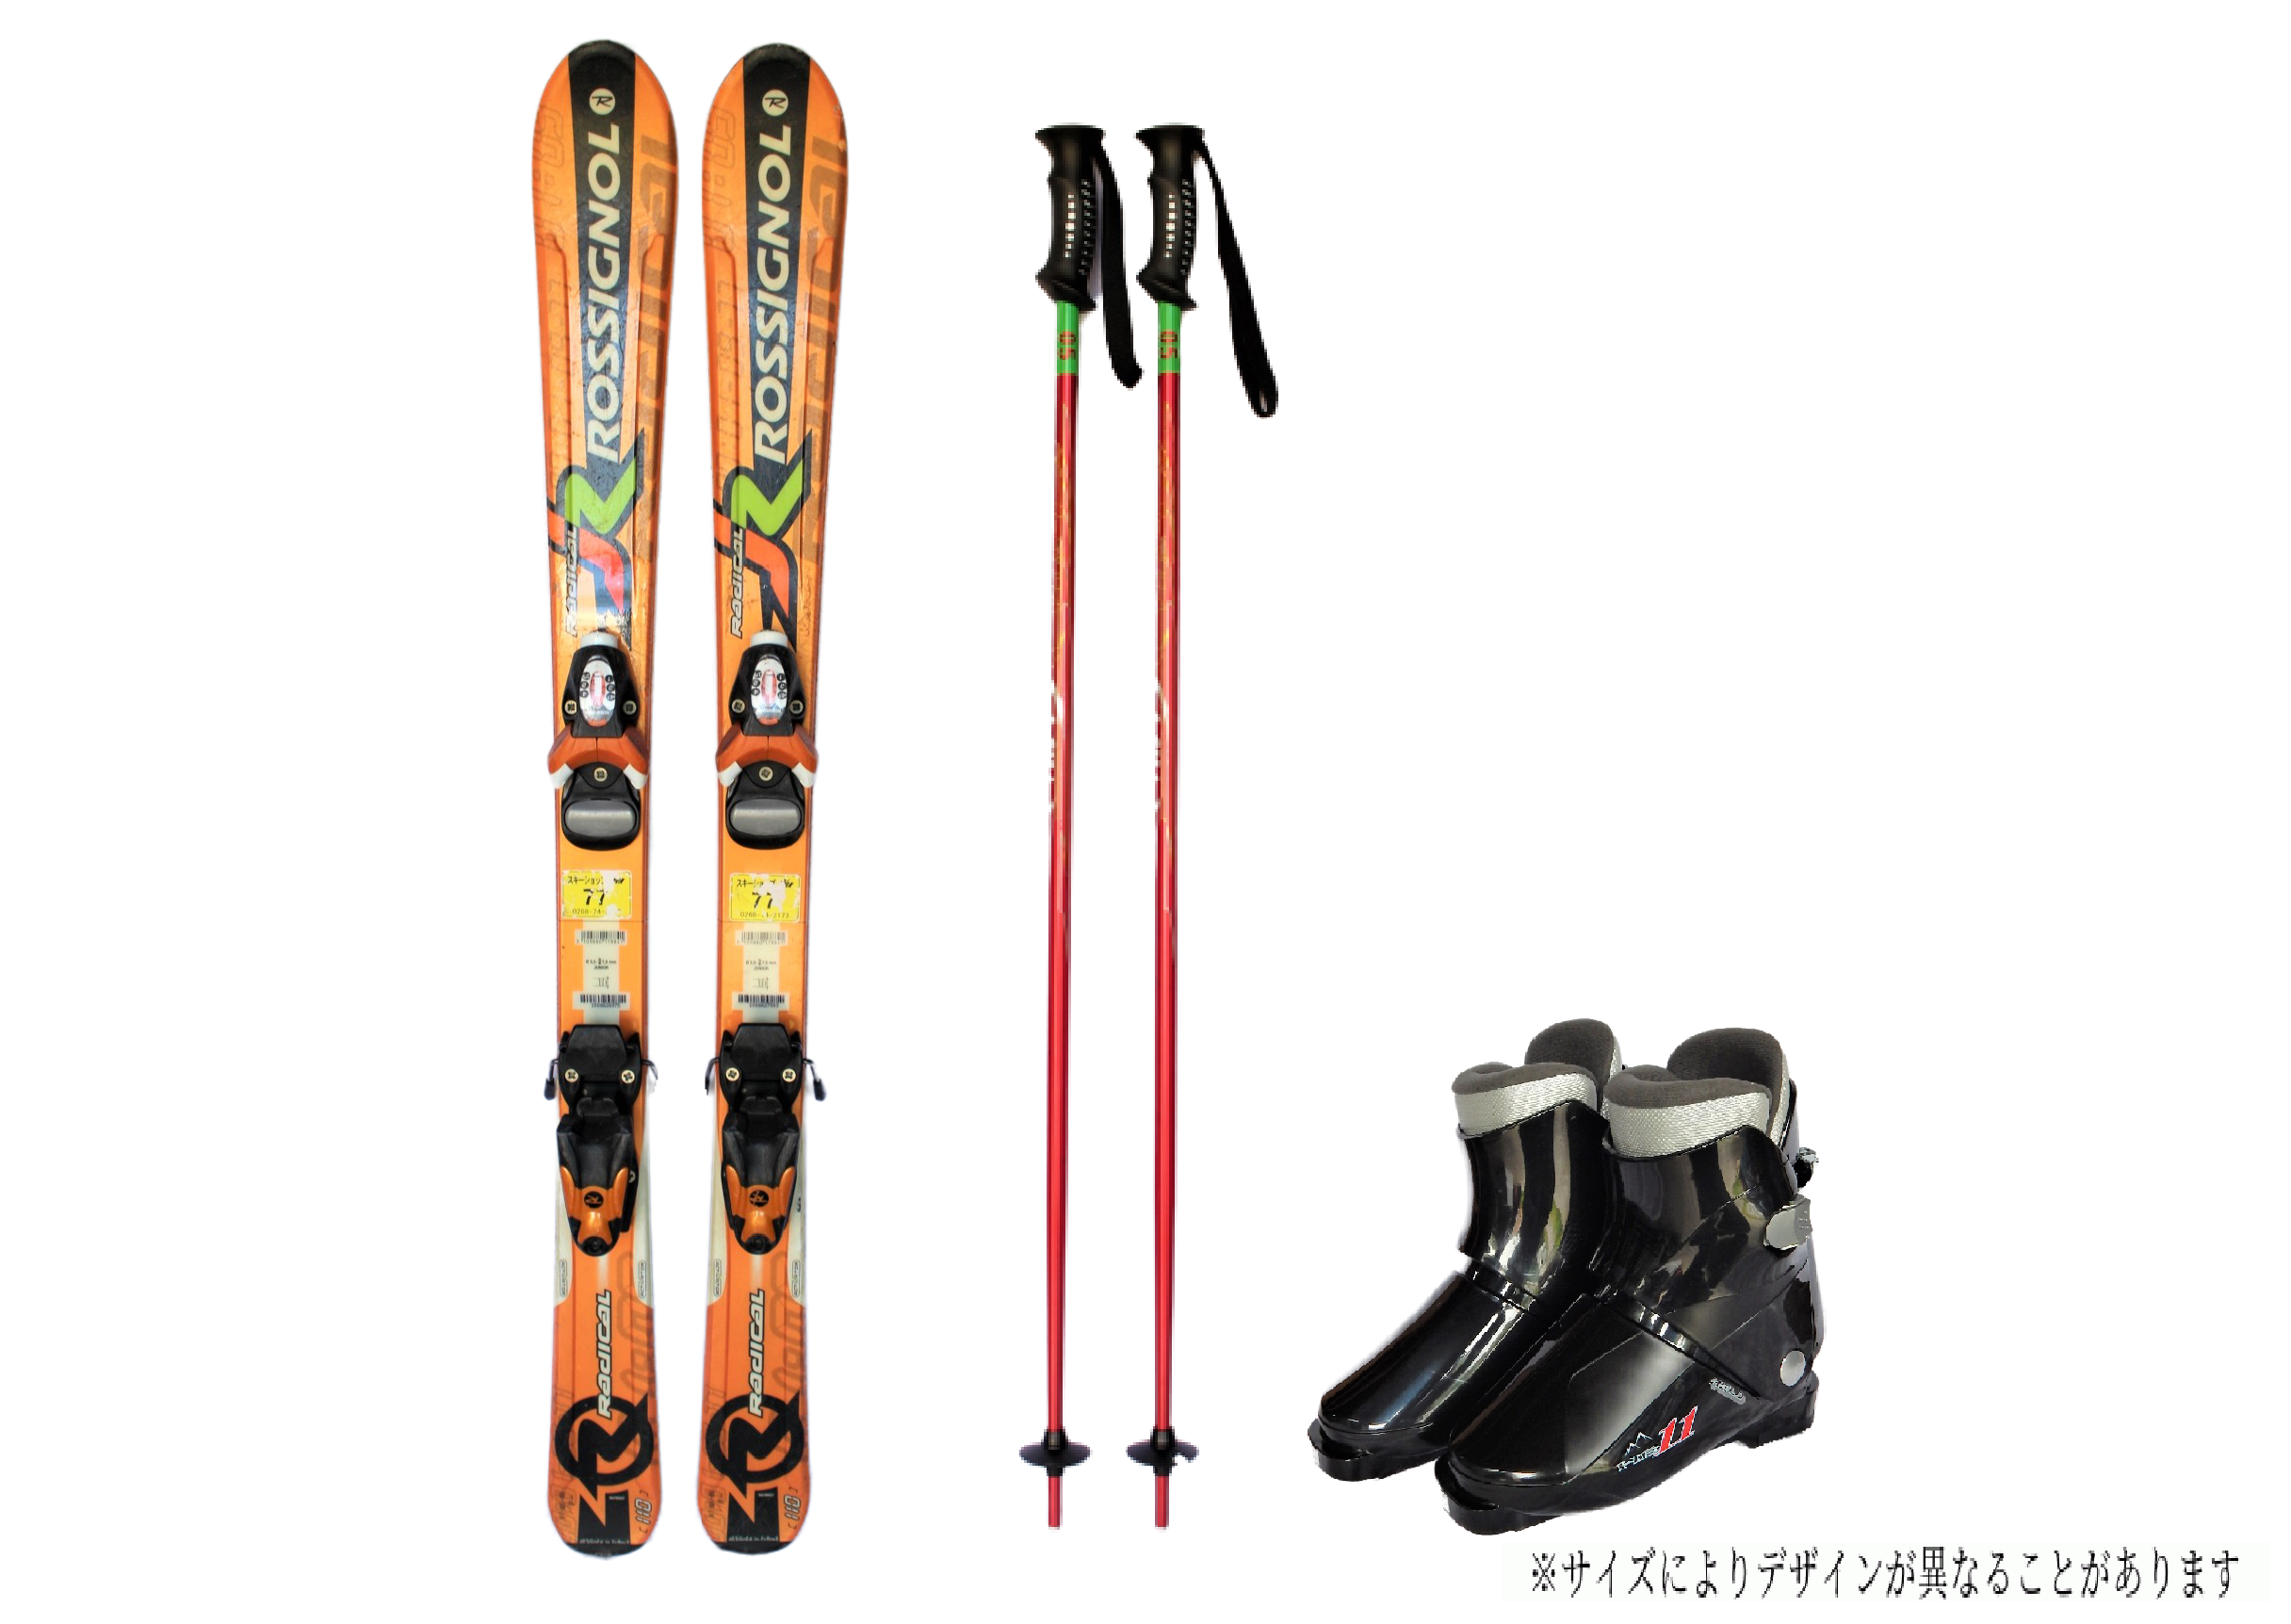 【5月開催スキー・スノーボードツアー】レンタルスキー・レンタルスノーボード申込ページ